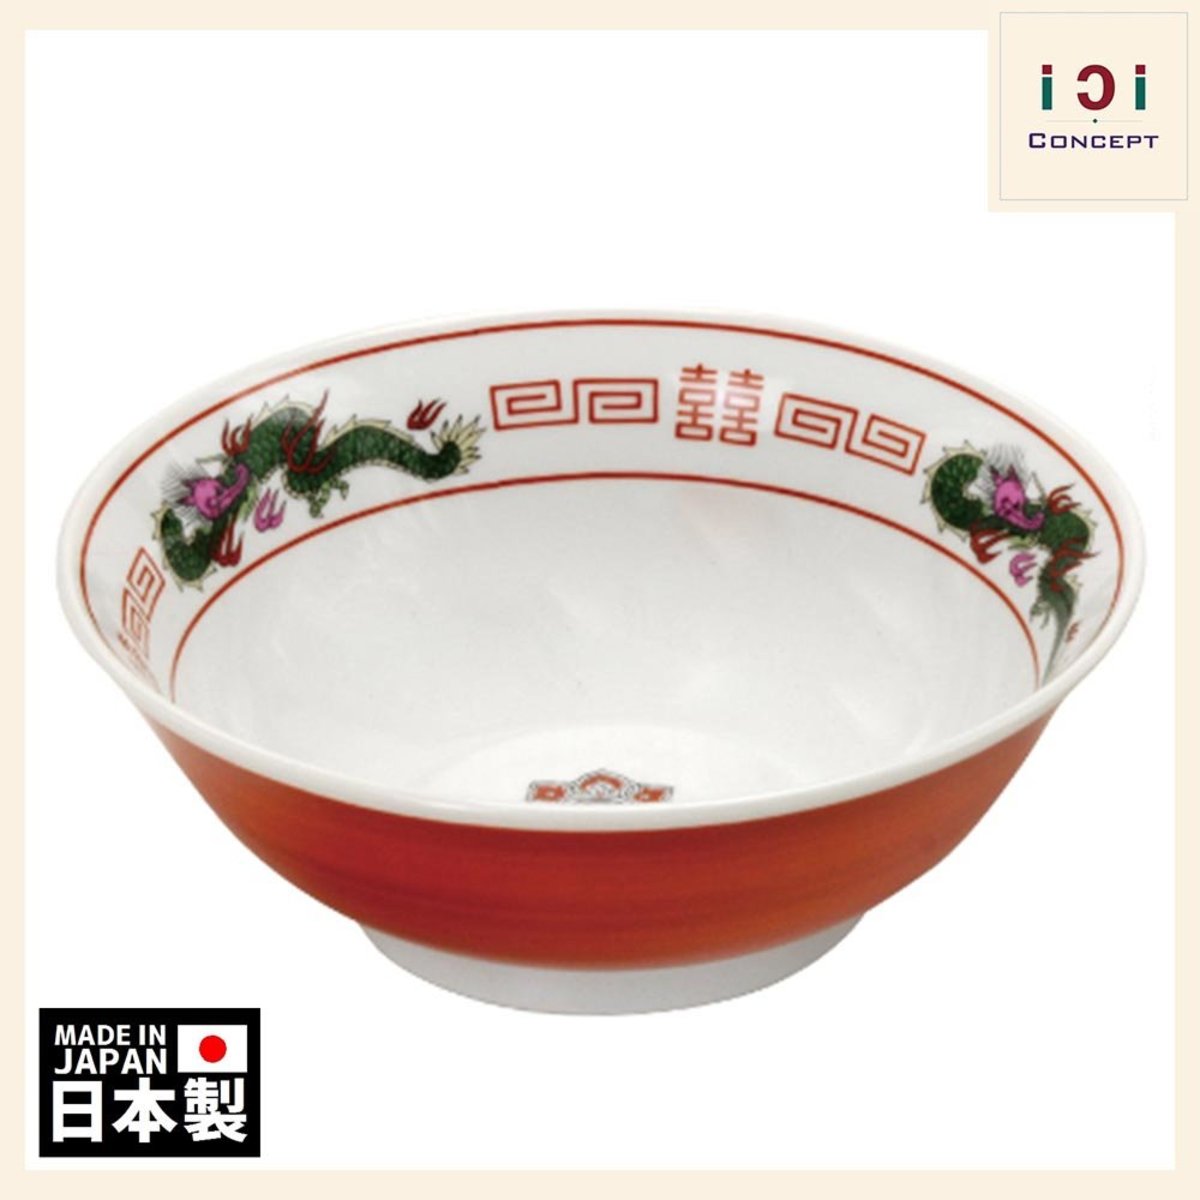 iCi Concept | 中華食器懷舊拉麵碗- 朱卷龍| HKTVmall 香港最大網購平台